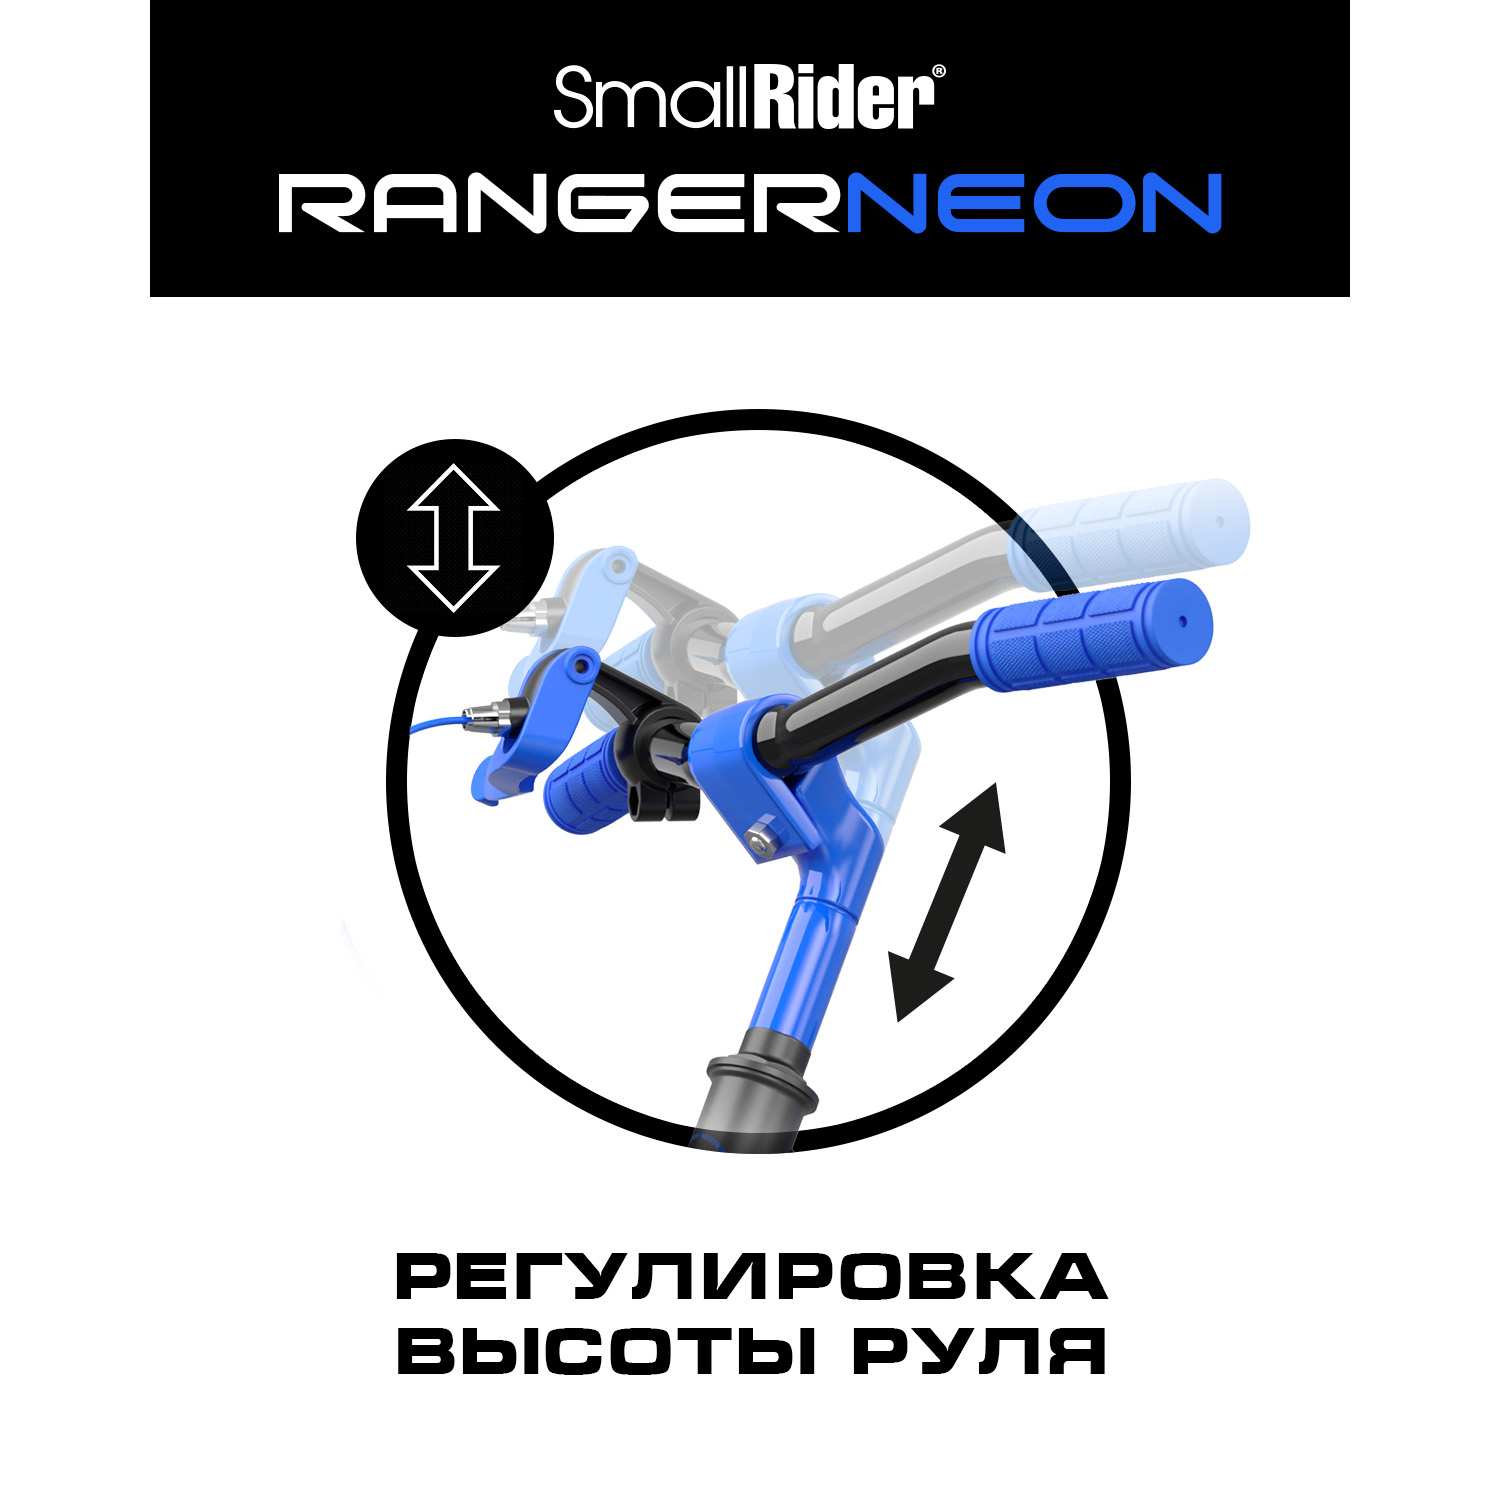 Беговел Small Rider Ranger 3 Neon R синий - фото 5